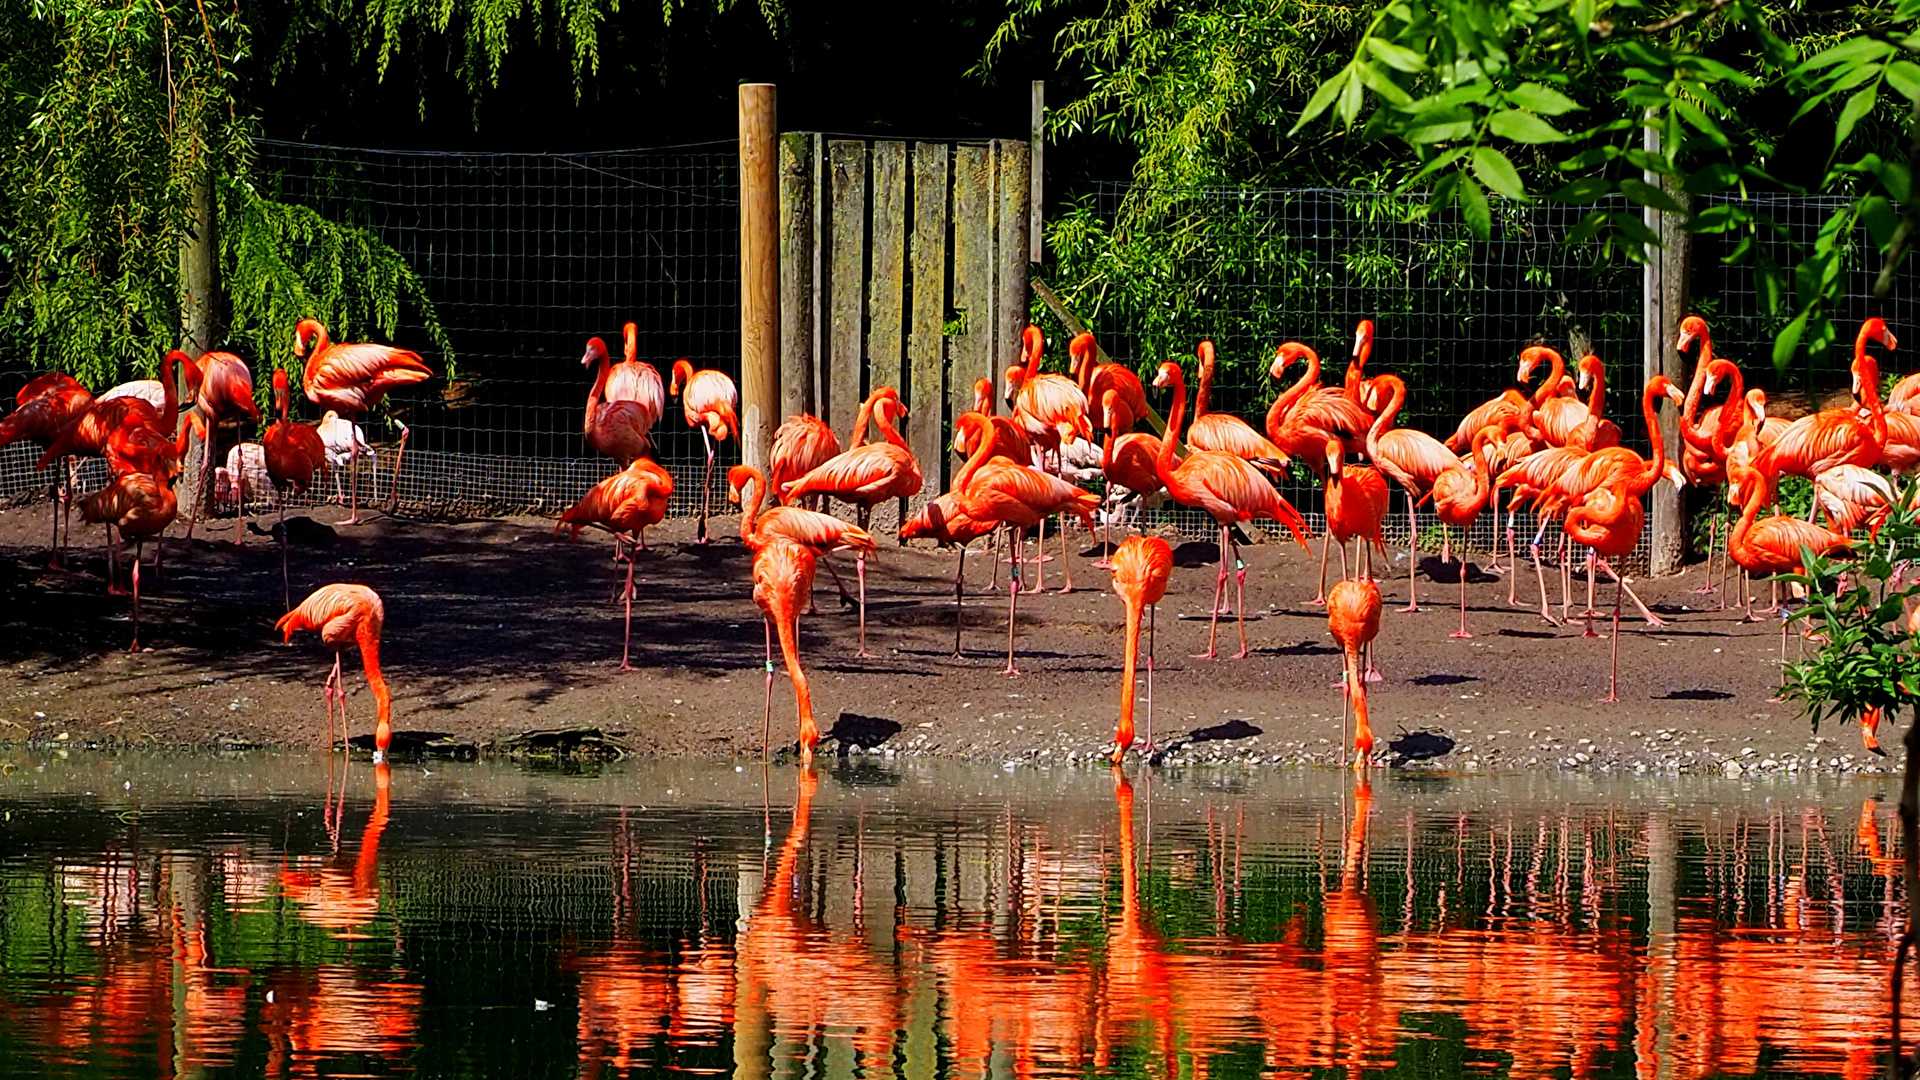 壁紙 19x1080 イングランド 鳥類 たくさん 水 フラミンゴ Flamingo Park Chester Zoo 動物 ダウンロード 写真